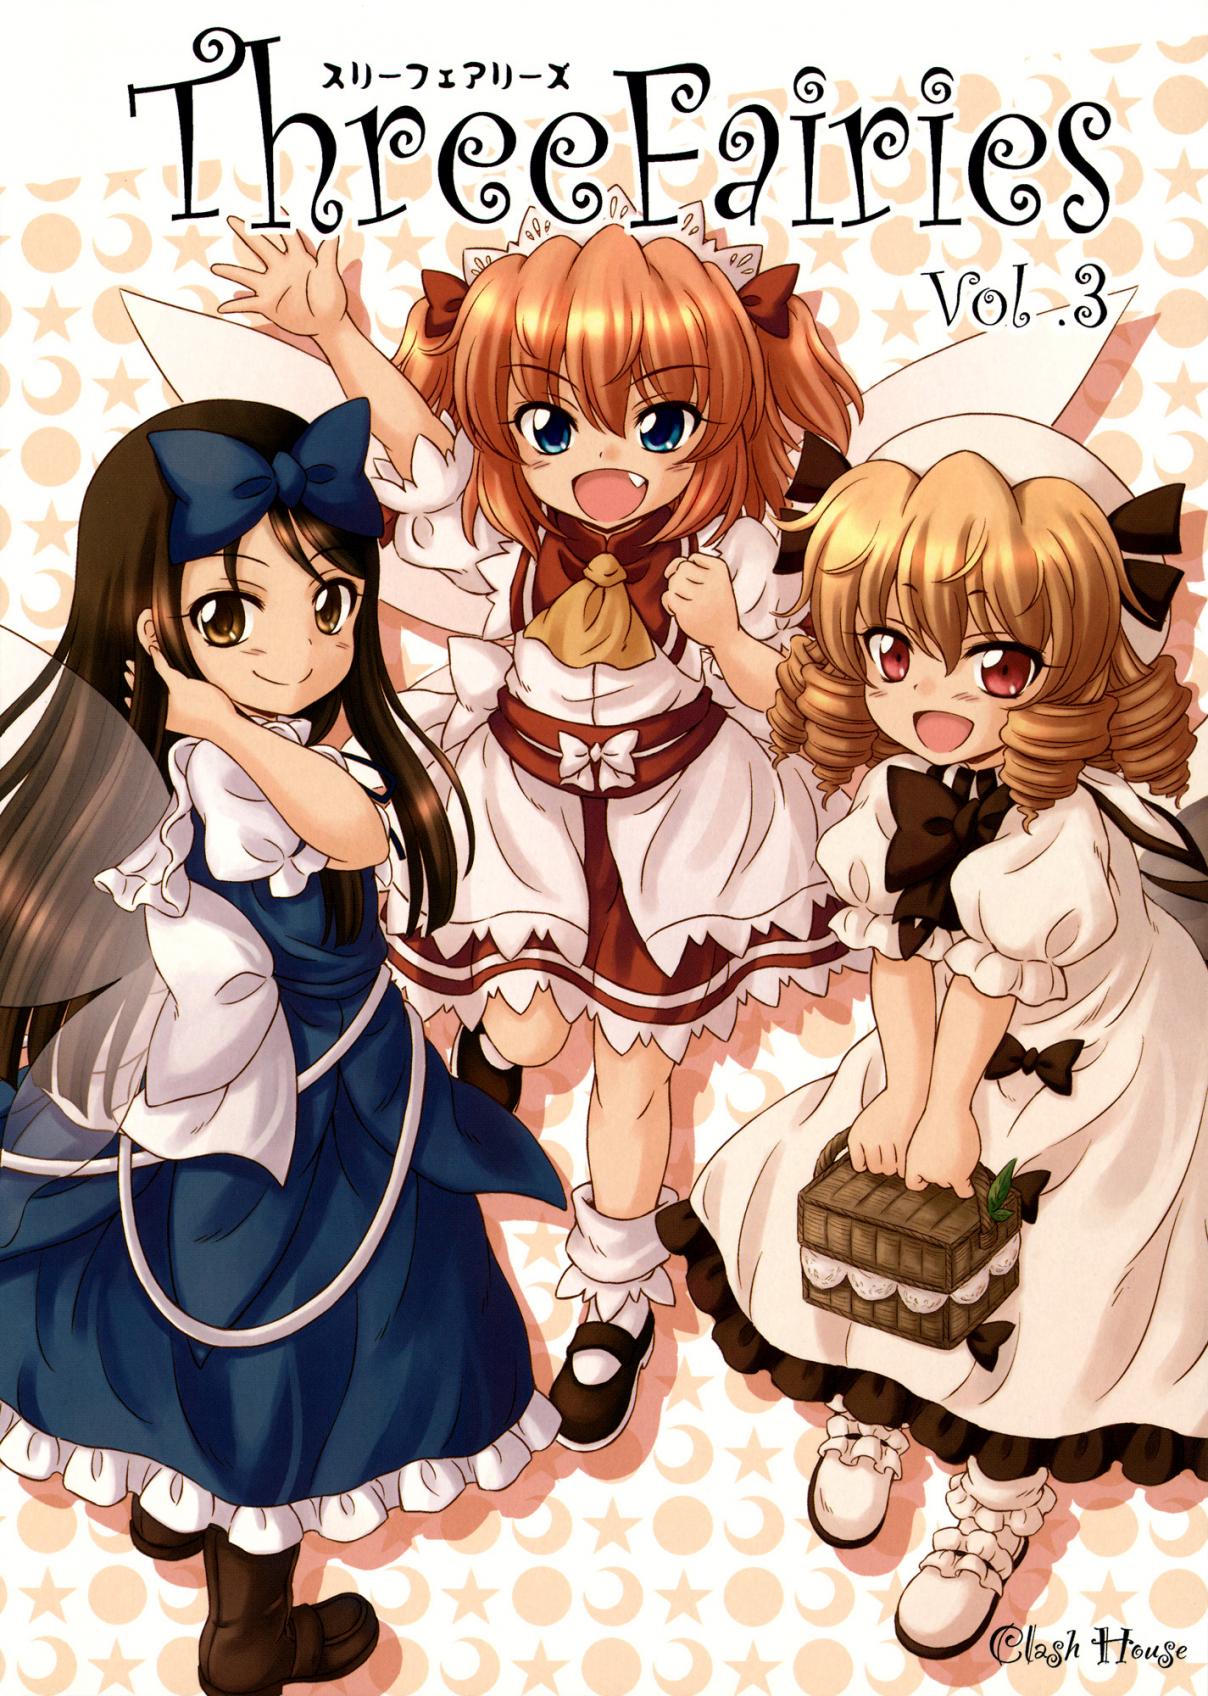 Touhou Three Fairies (Doujinshi) Ch. 3 Three Fairies (3)